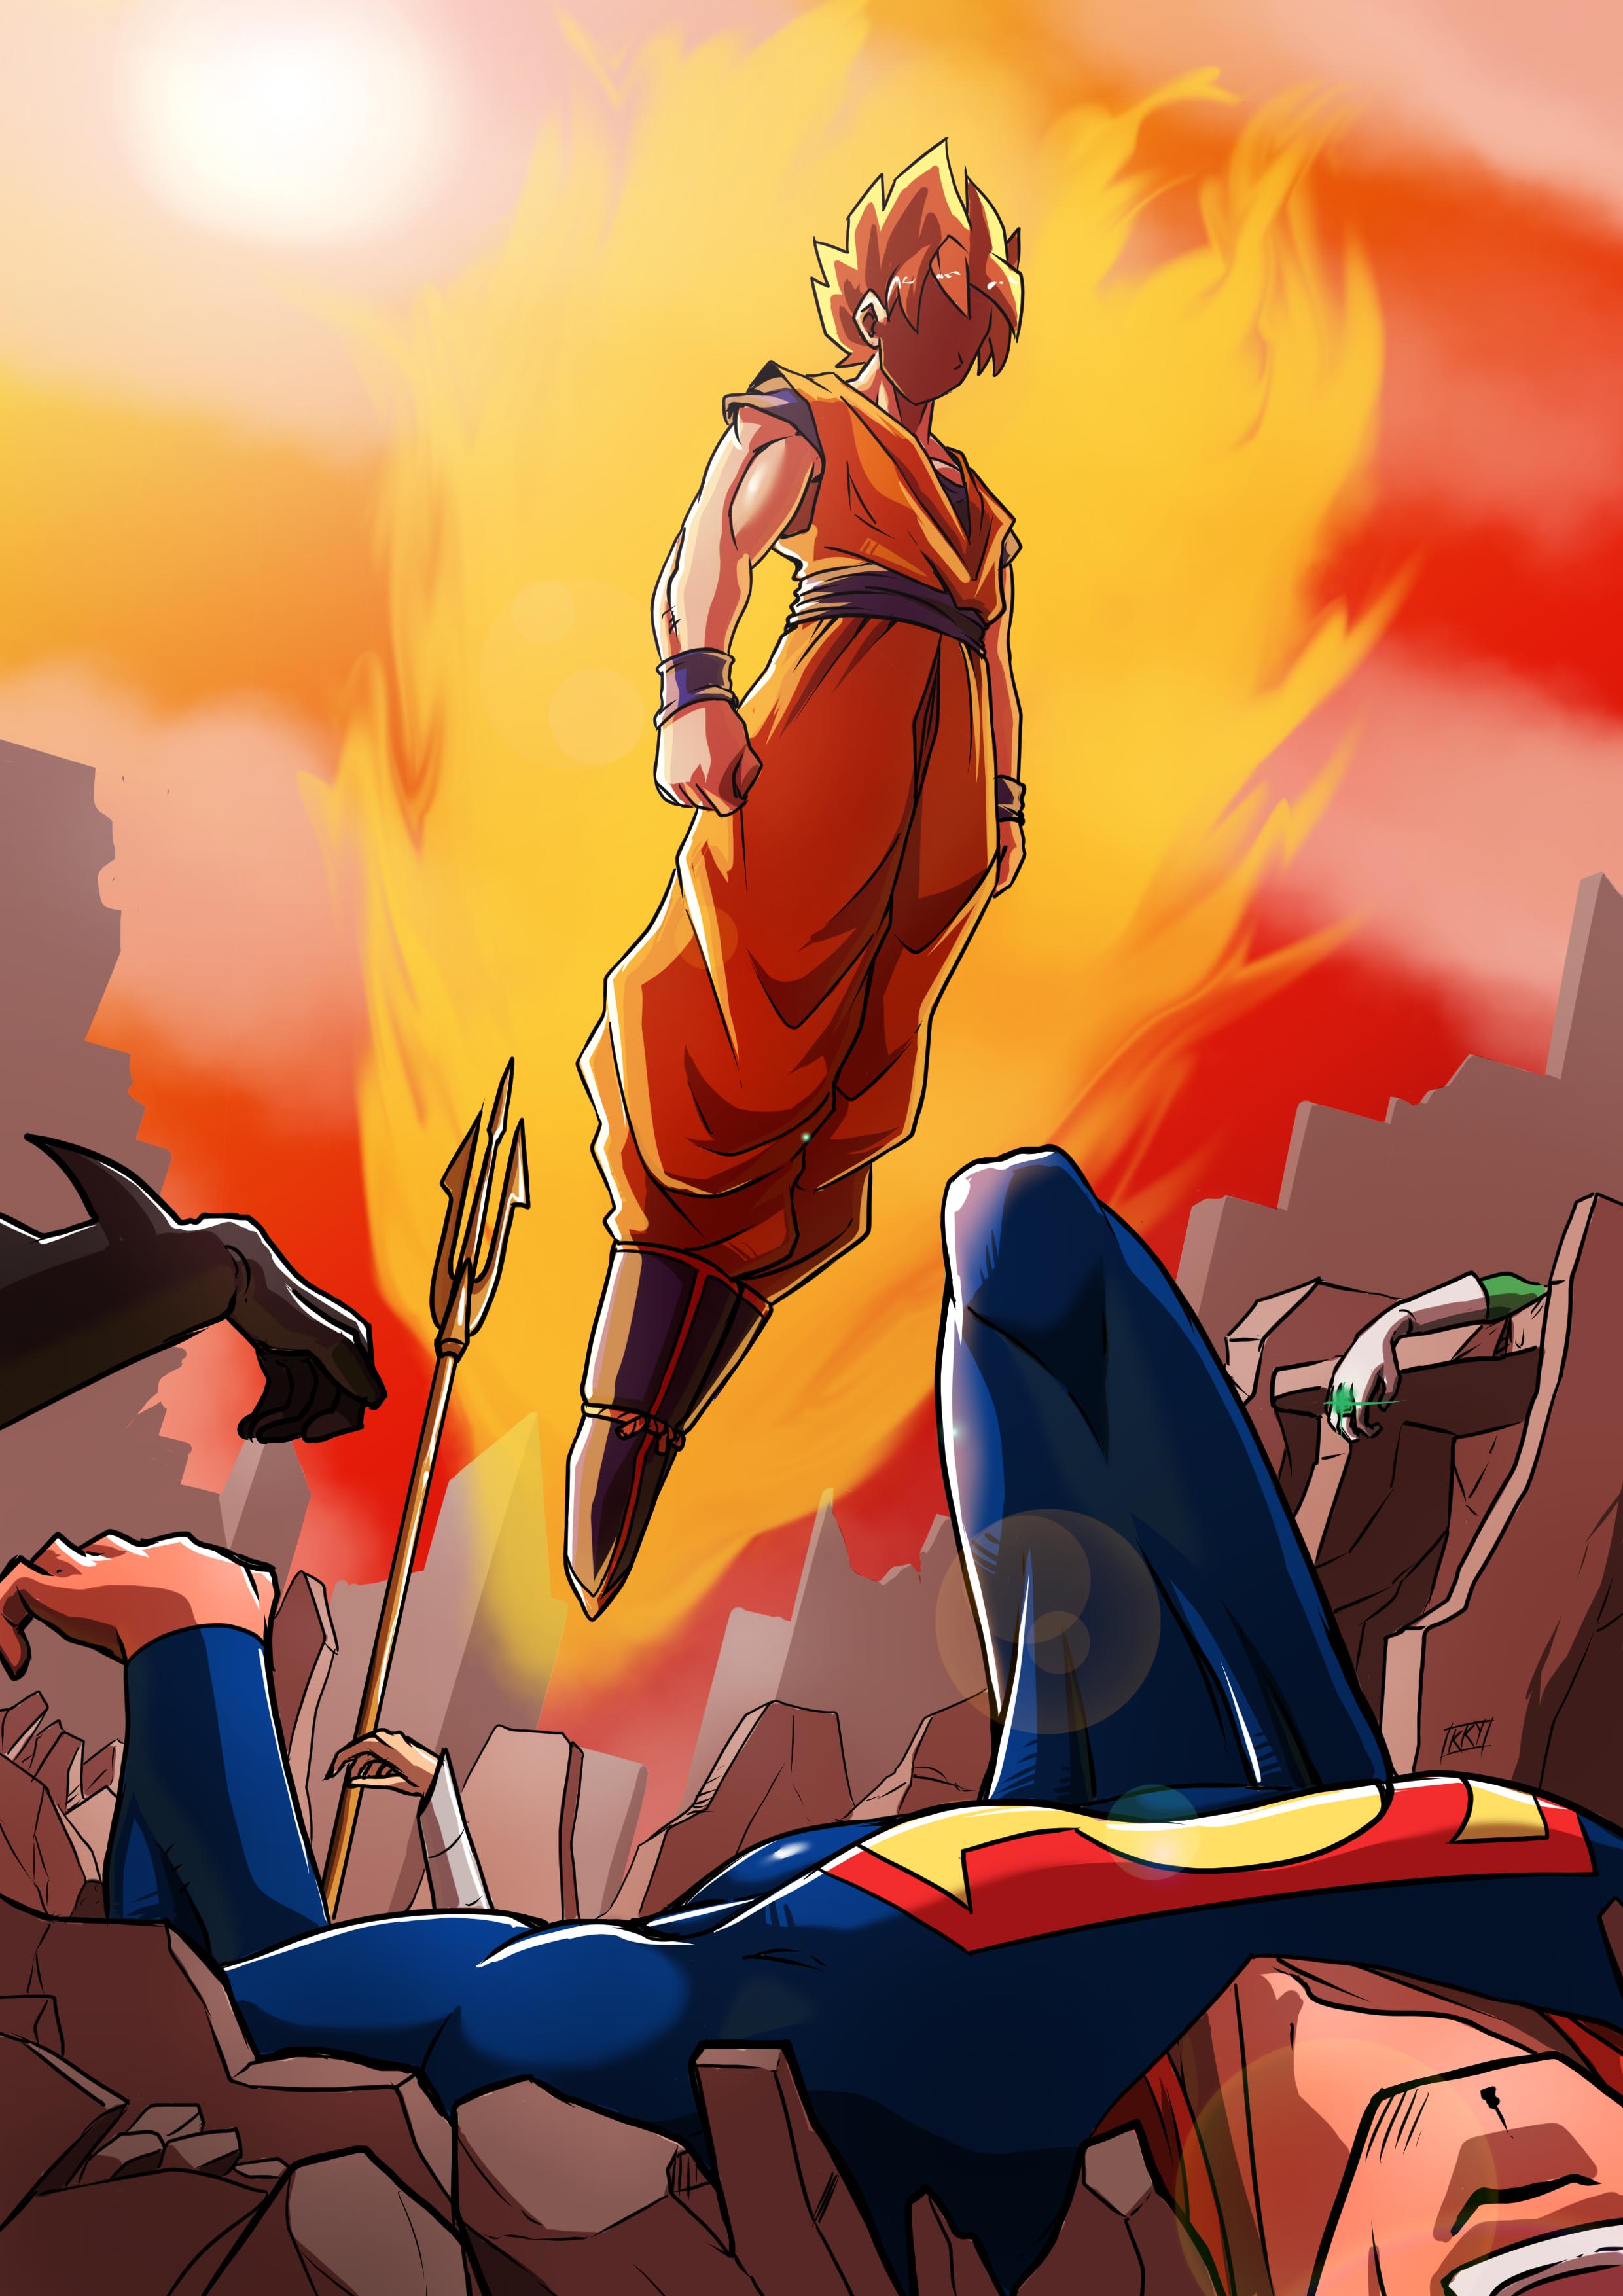 Goku vs Dc poster - kukuruyo